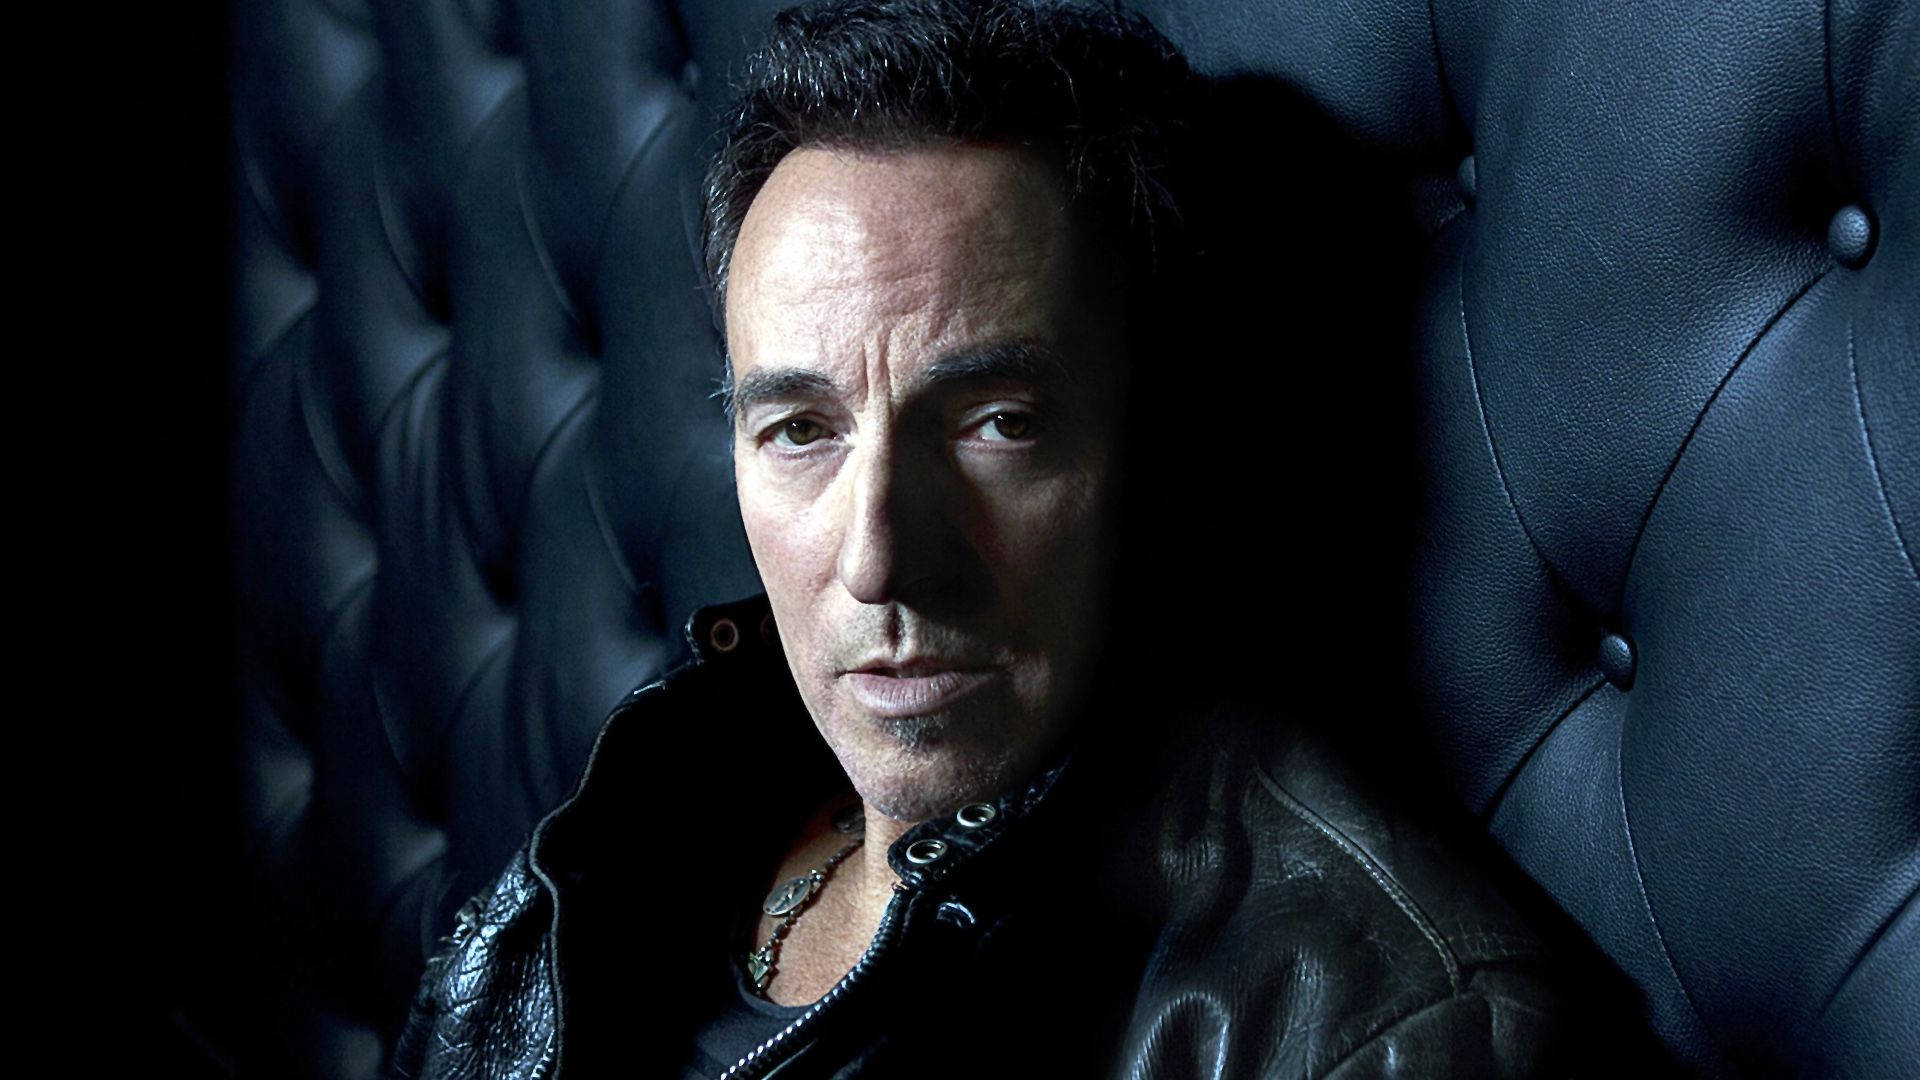 Amerikanischerrocker Bruce Springsteen Auf Schwarzem Sofa Wallpaper